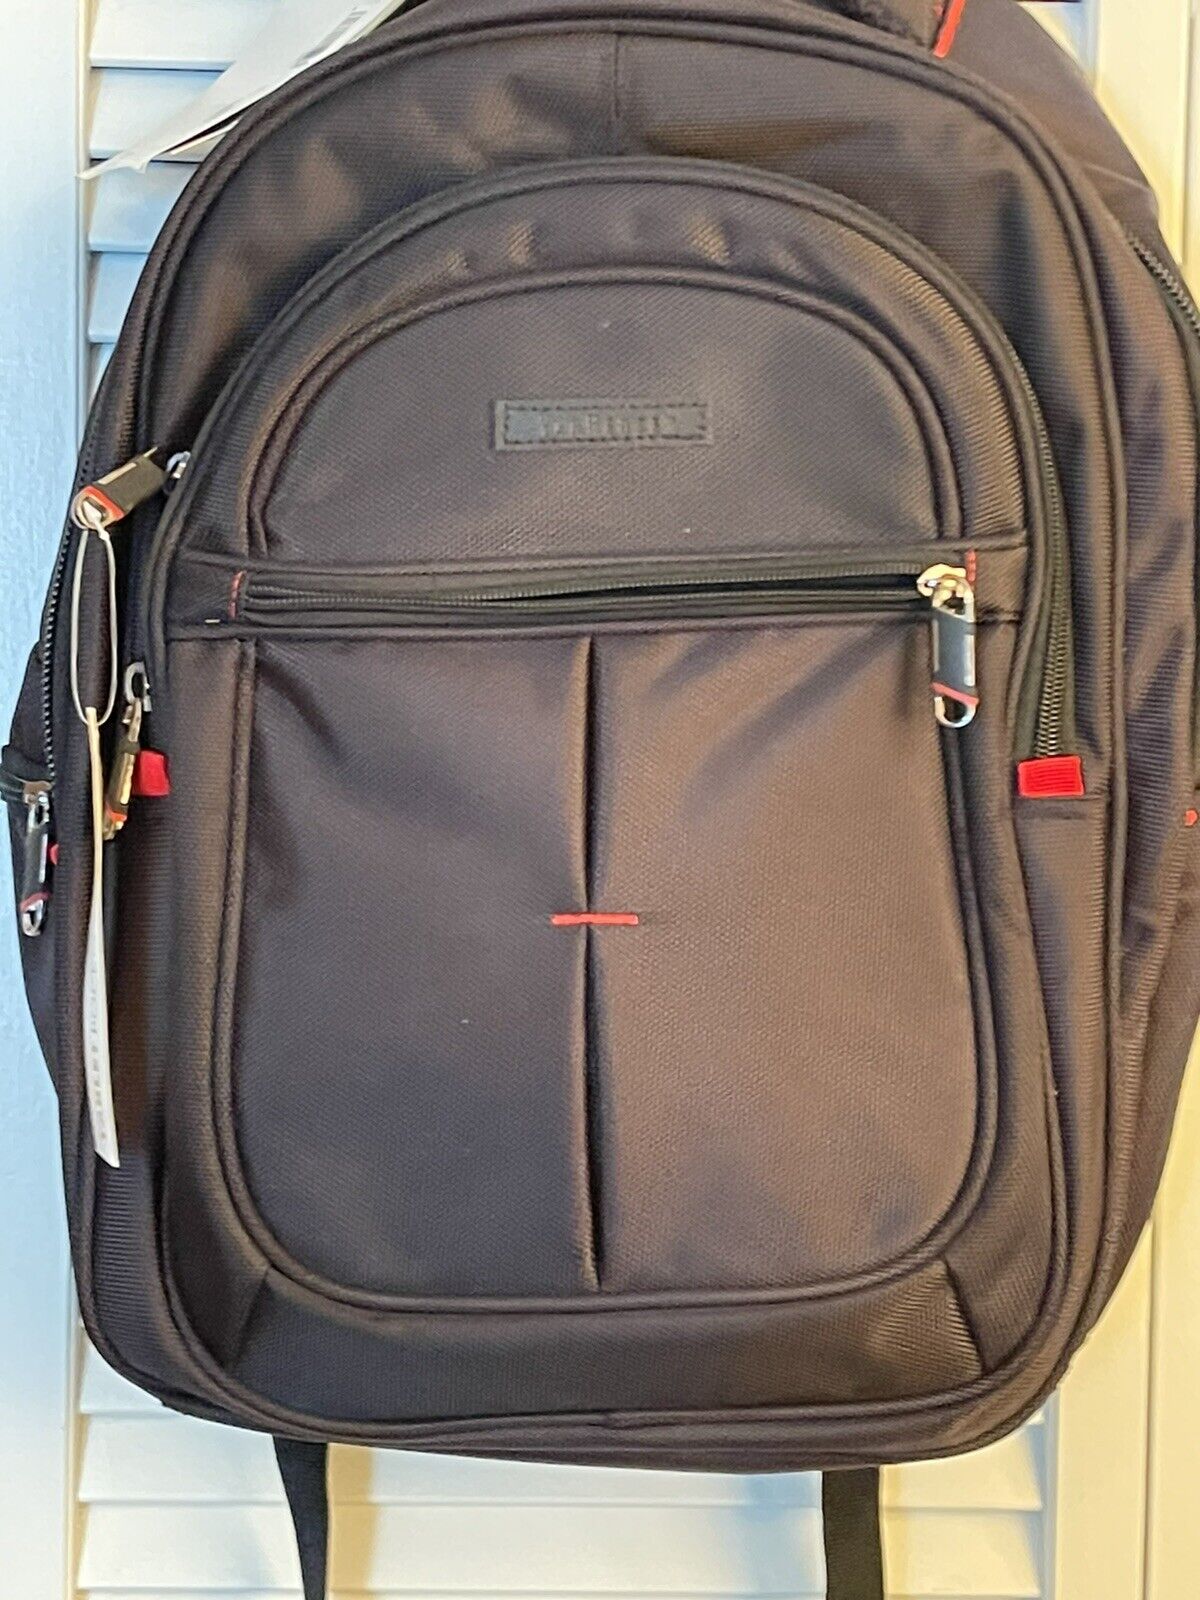 Van Heusen Travel Backpack for Men NWT Fits 15” Laptop + Tablet Pocket + More